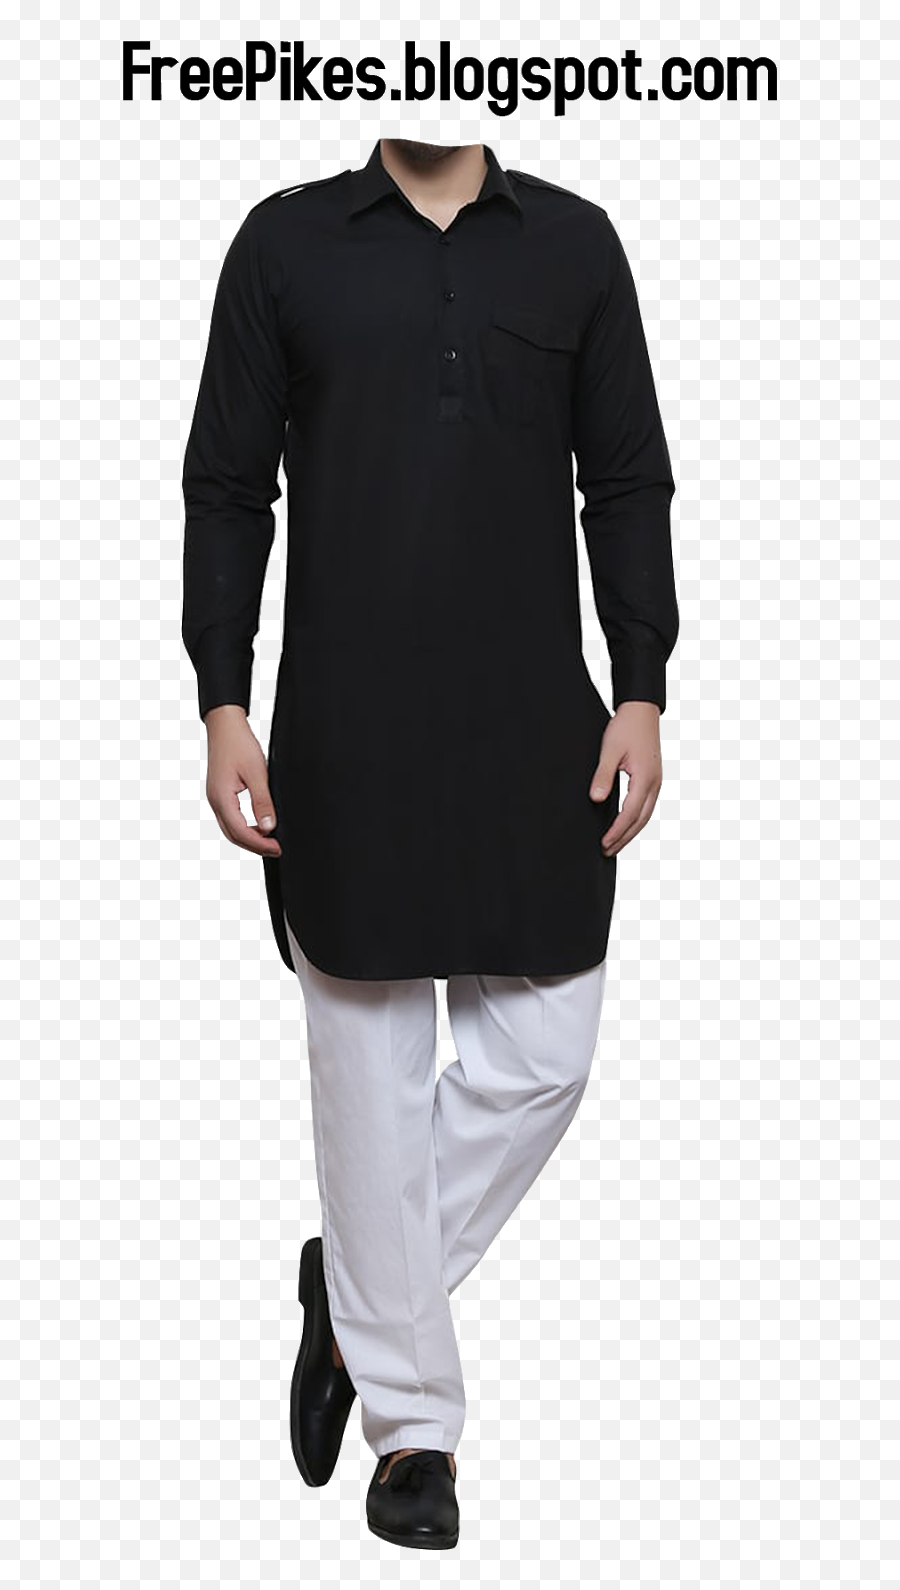 Download Free Png Salwar Kameez Dress For Mens In Black And - Diagram For Library Management System,Men Png